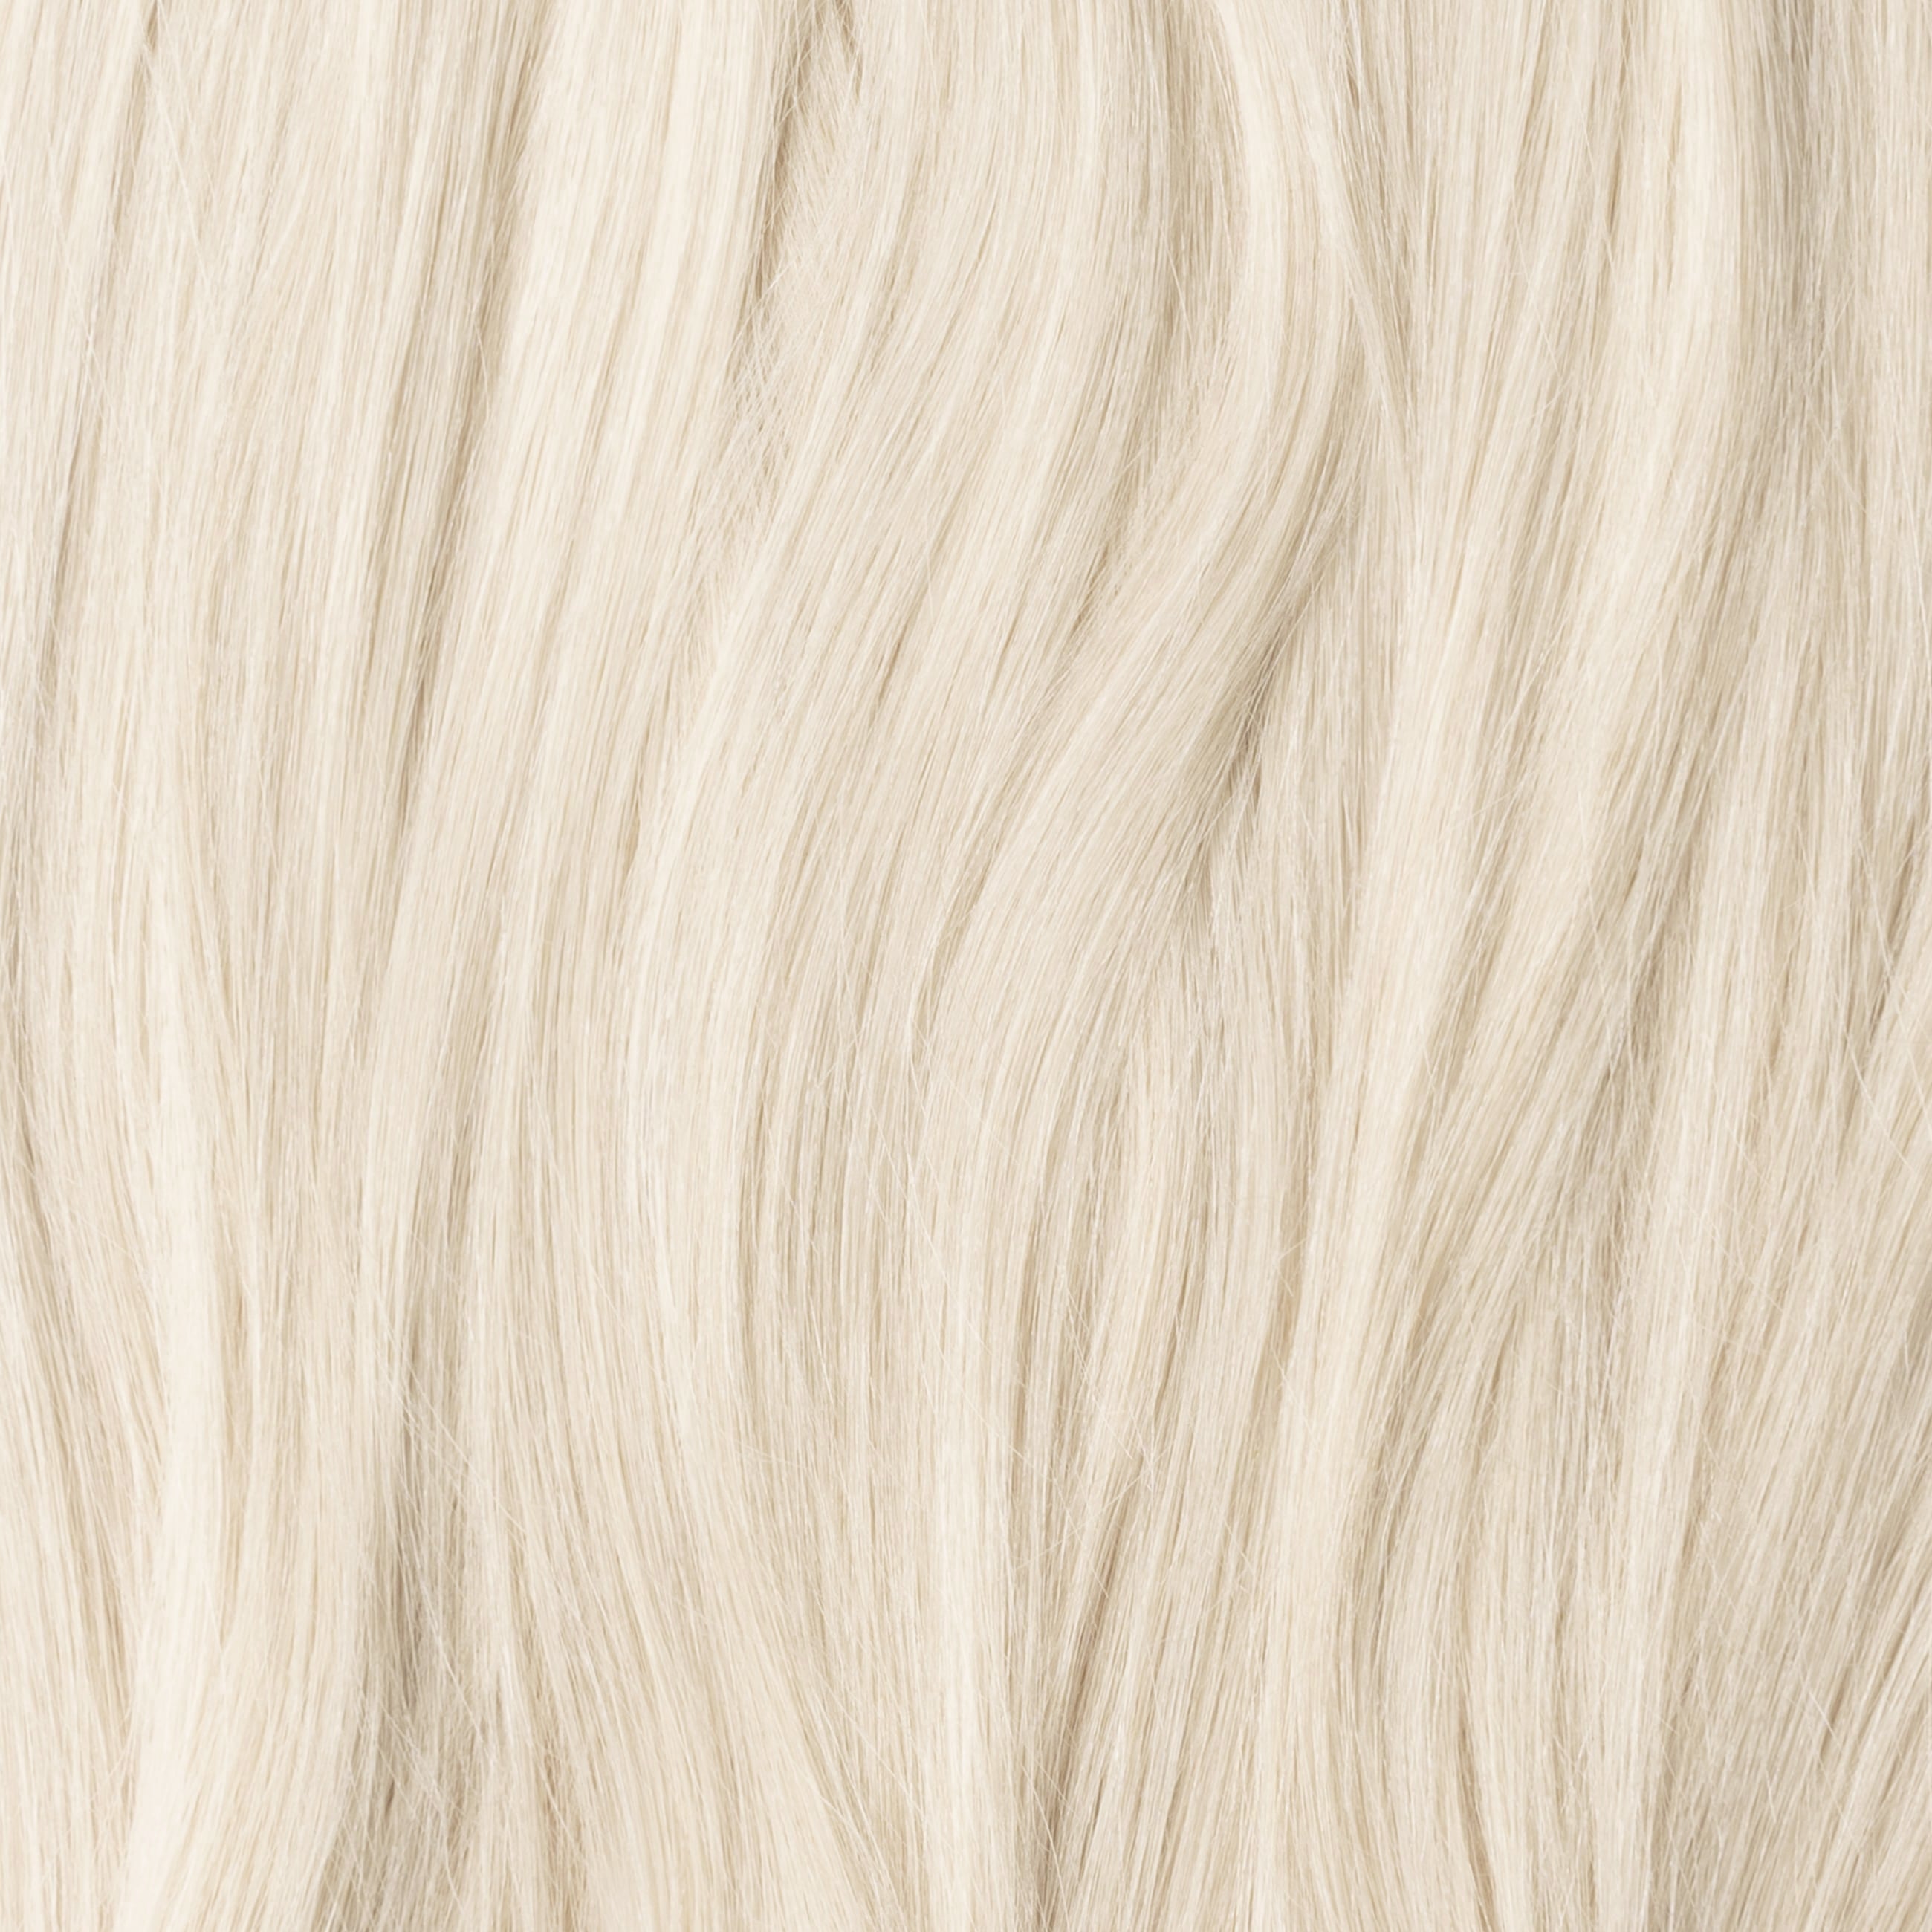 Invisible weft - Platinum Blonde 70B